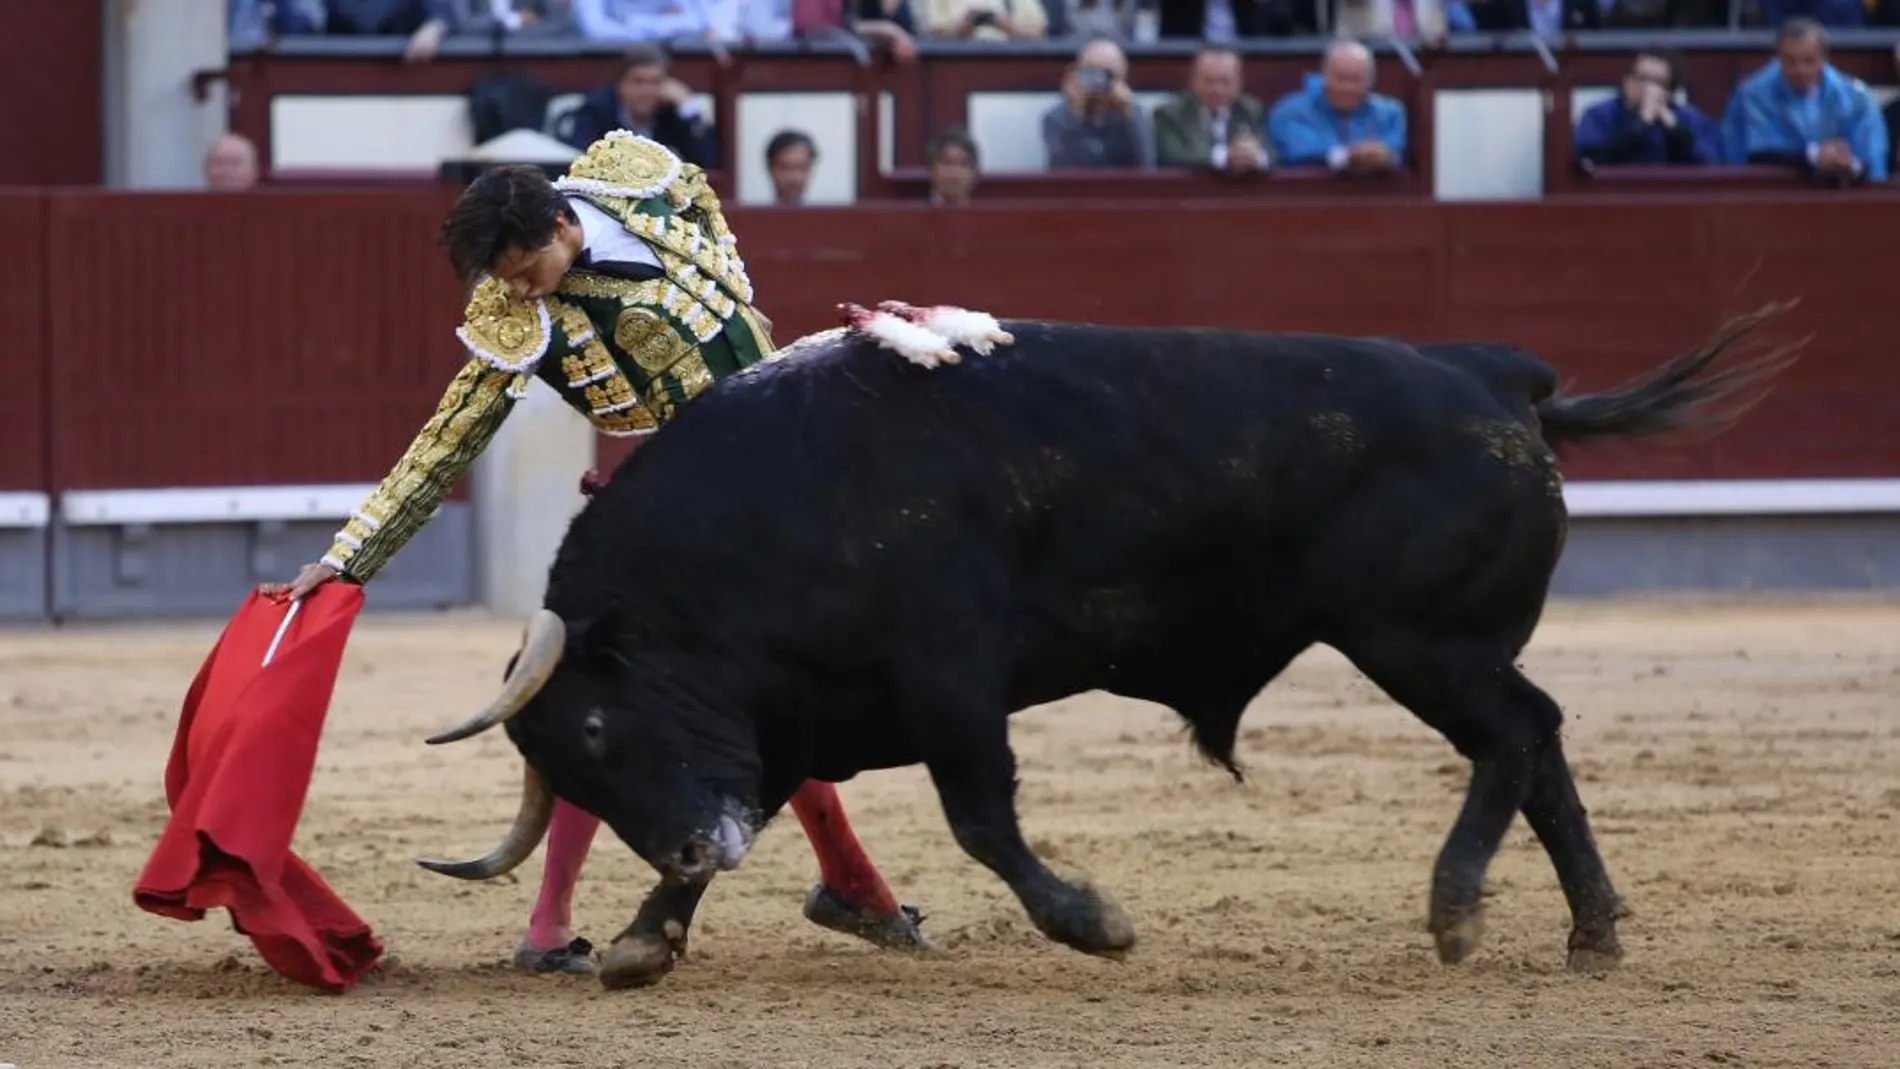 Andrés Roca Rey toreando por el pitón derecho al segundo de su lote, del que consiguió cortar una oreja. Foto: Rubén Mondelo.